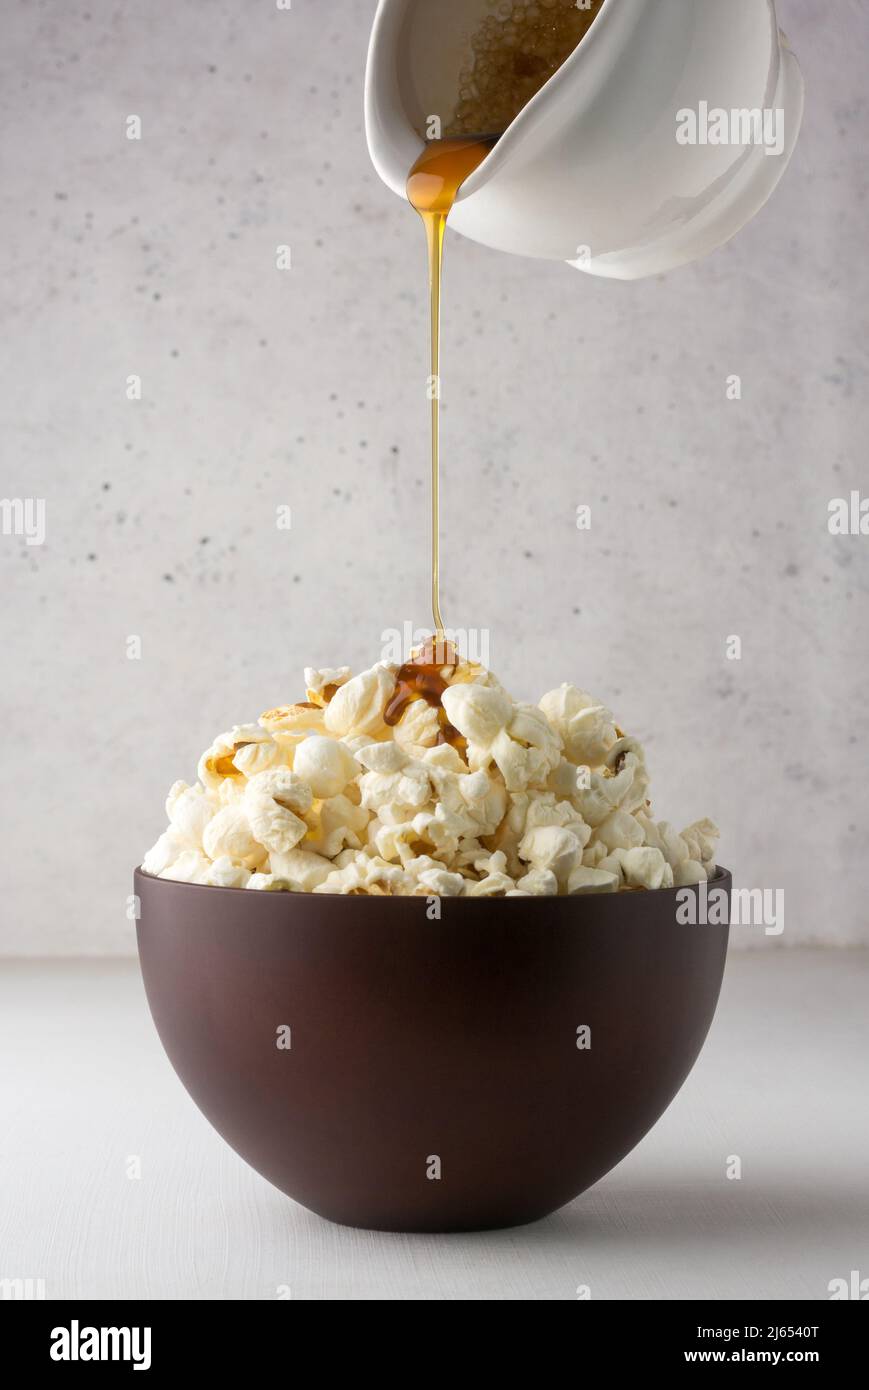 Gießen von Palmzucker-Sirup auf Popcorn, köstlicher, fettarmer, gesunder Snack in einer Tasse, weißer strukturierter Hintergrund, Nahaufnahme Stockfoto